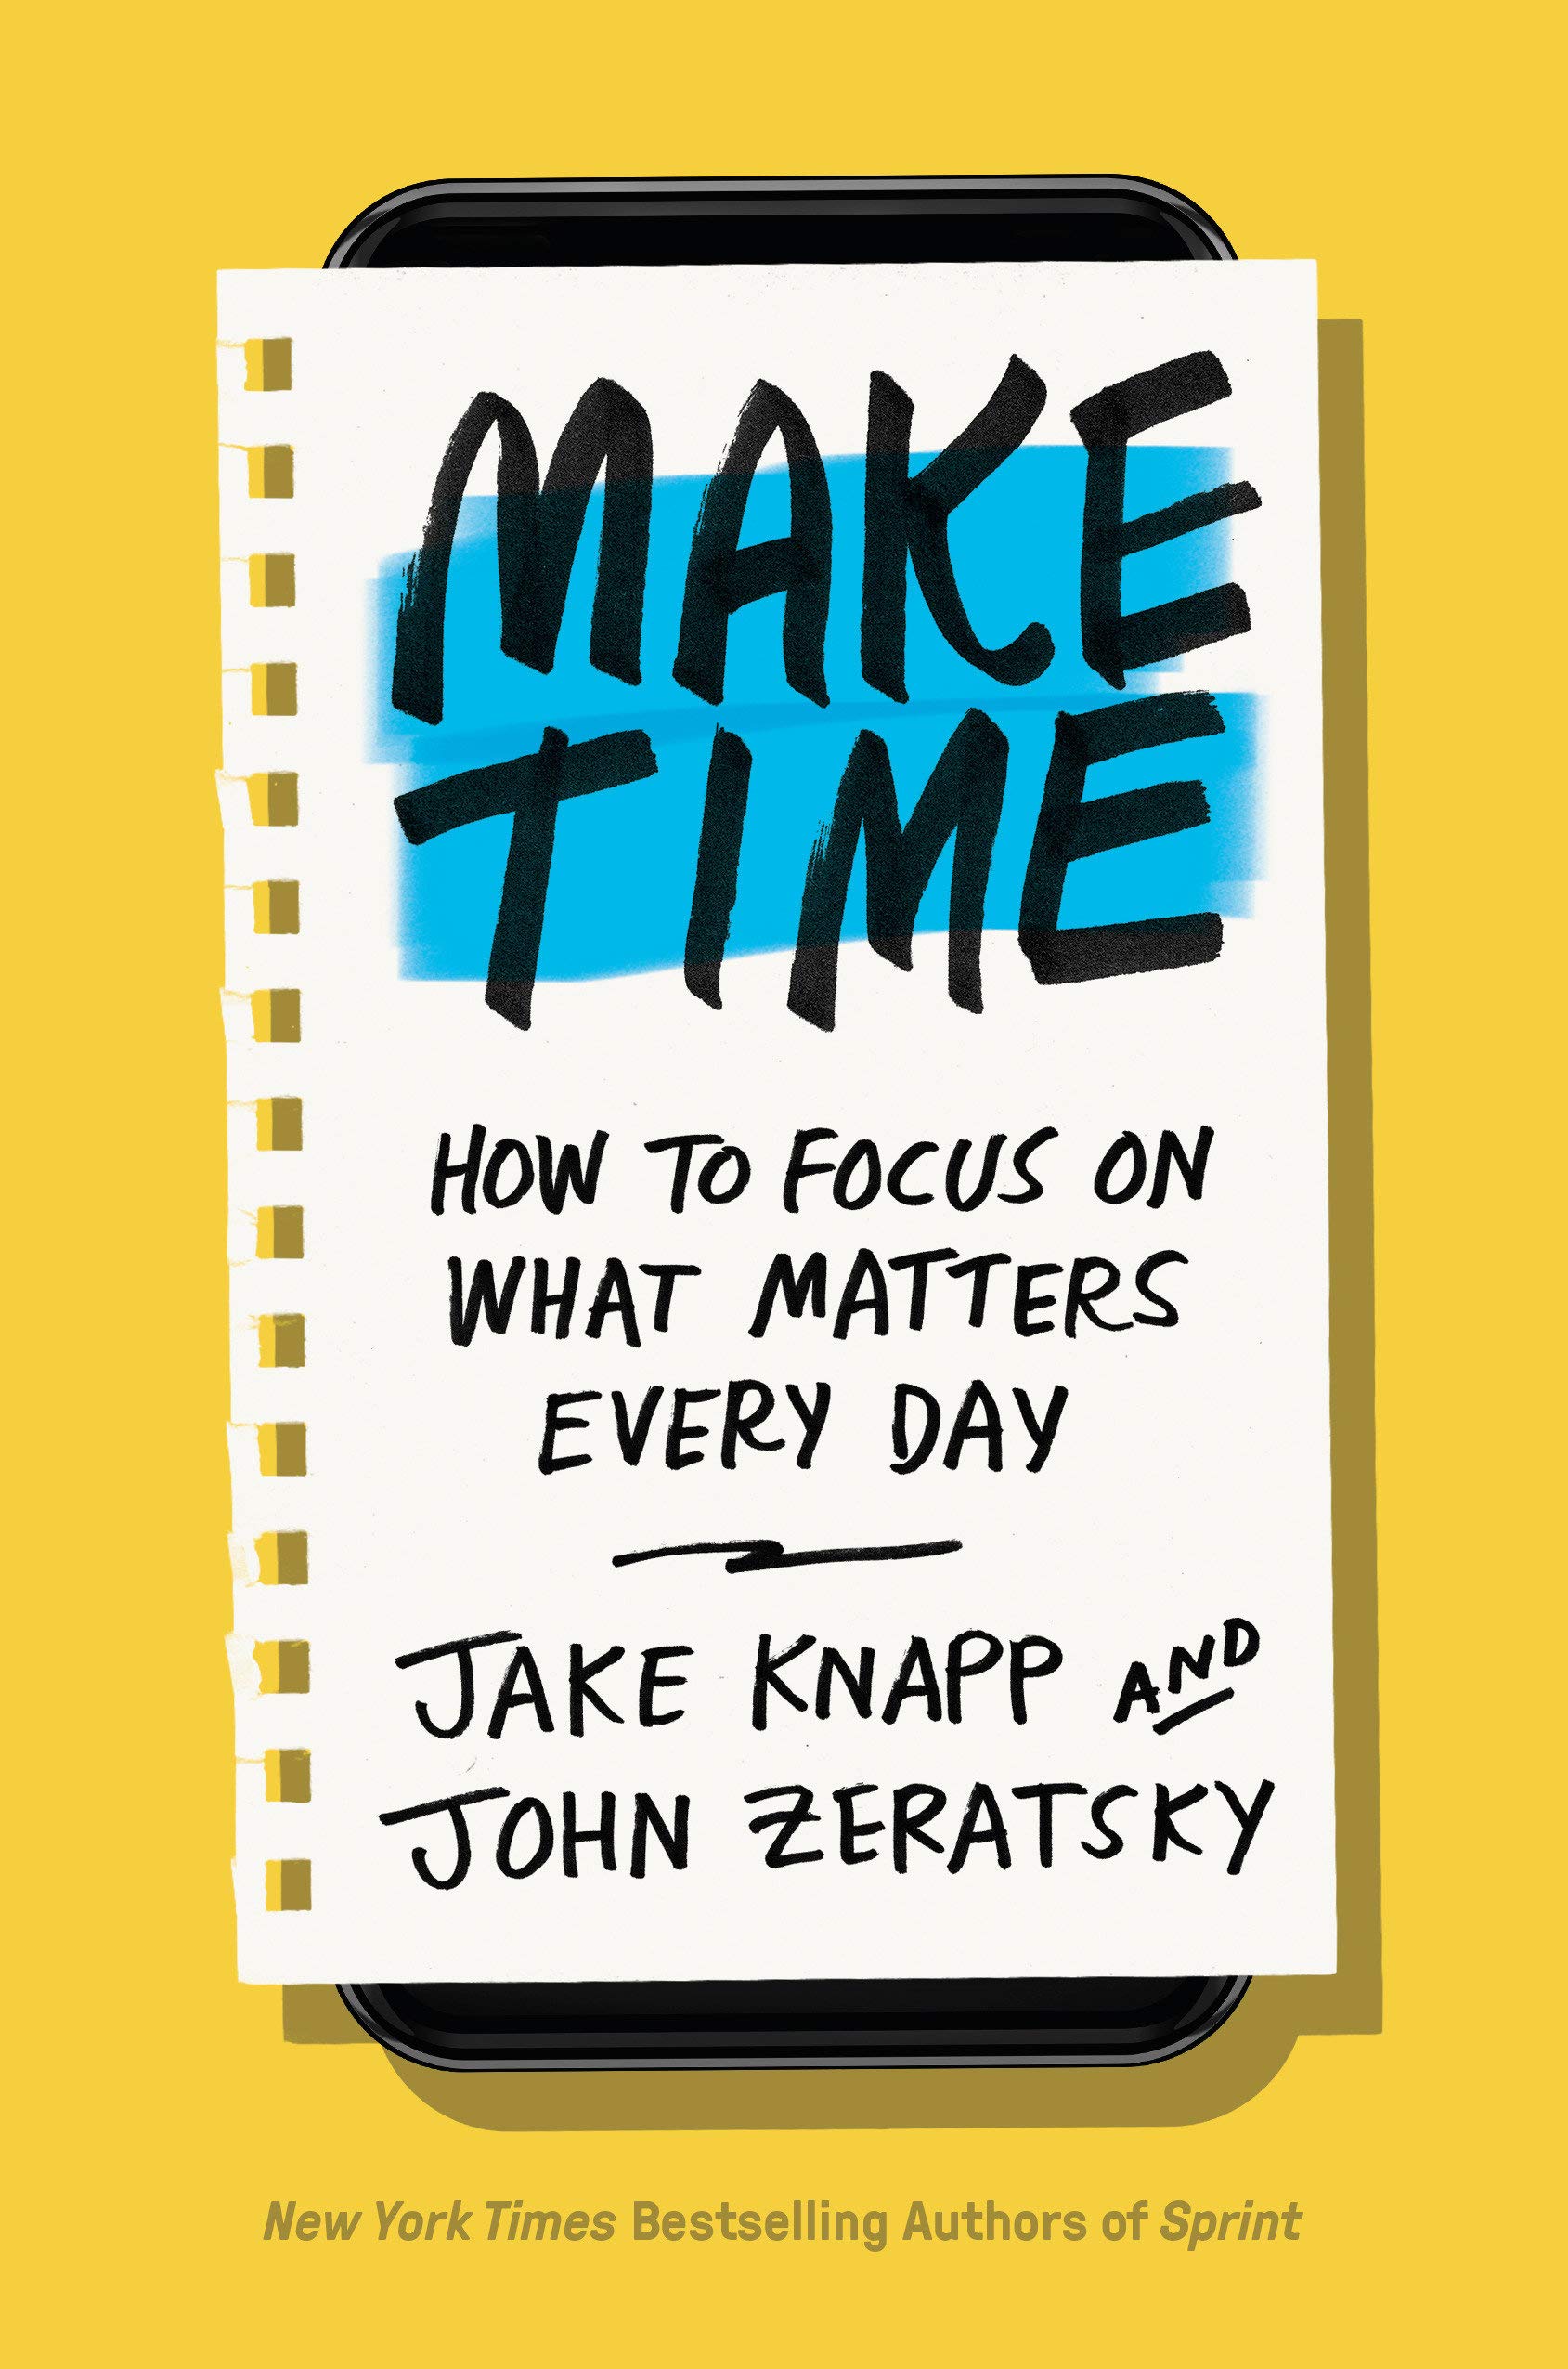 Make time by Jake Knapp & John Zeratsky